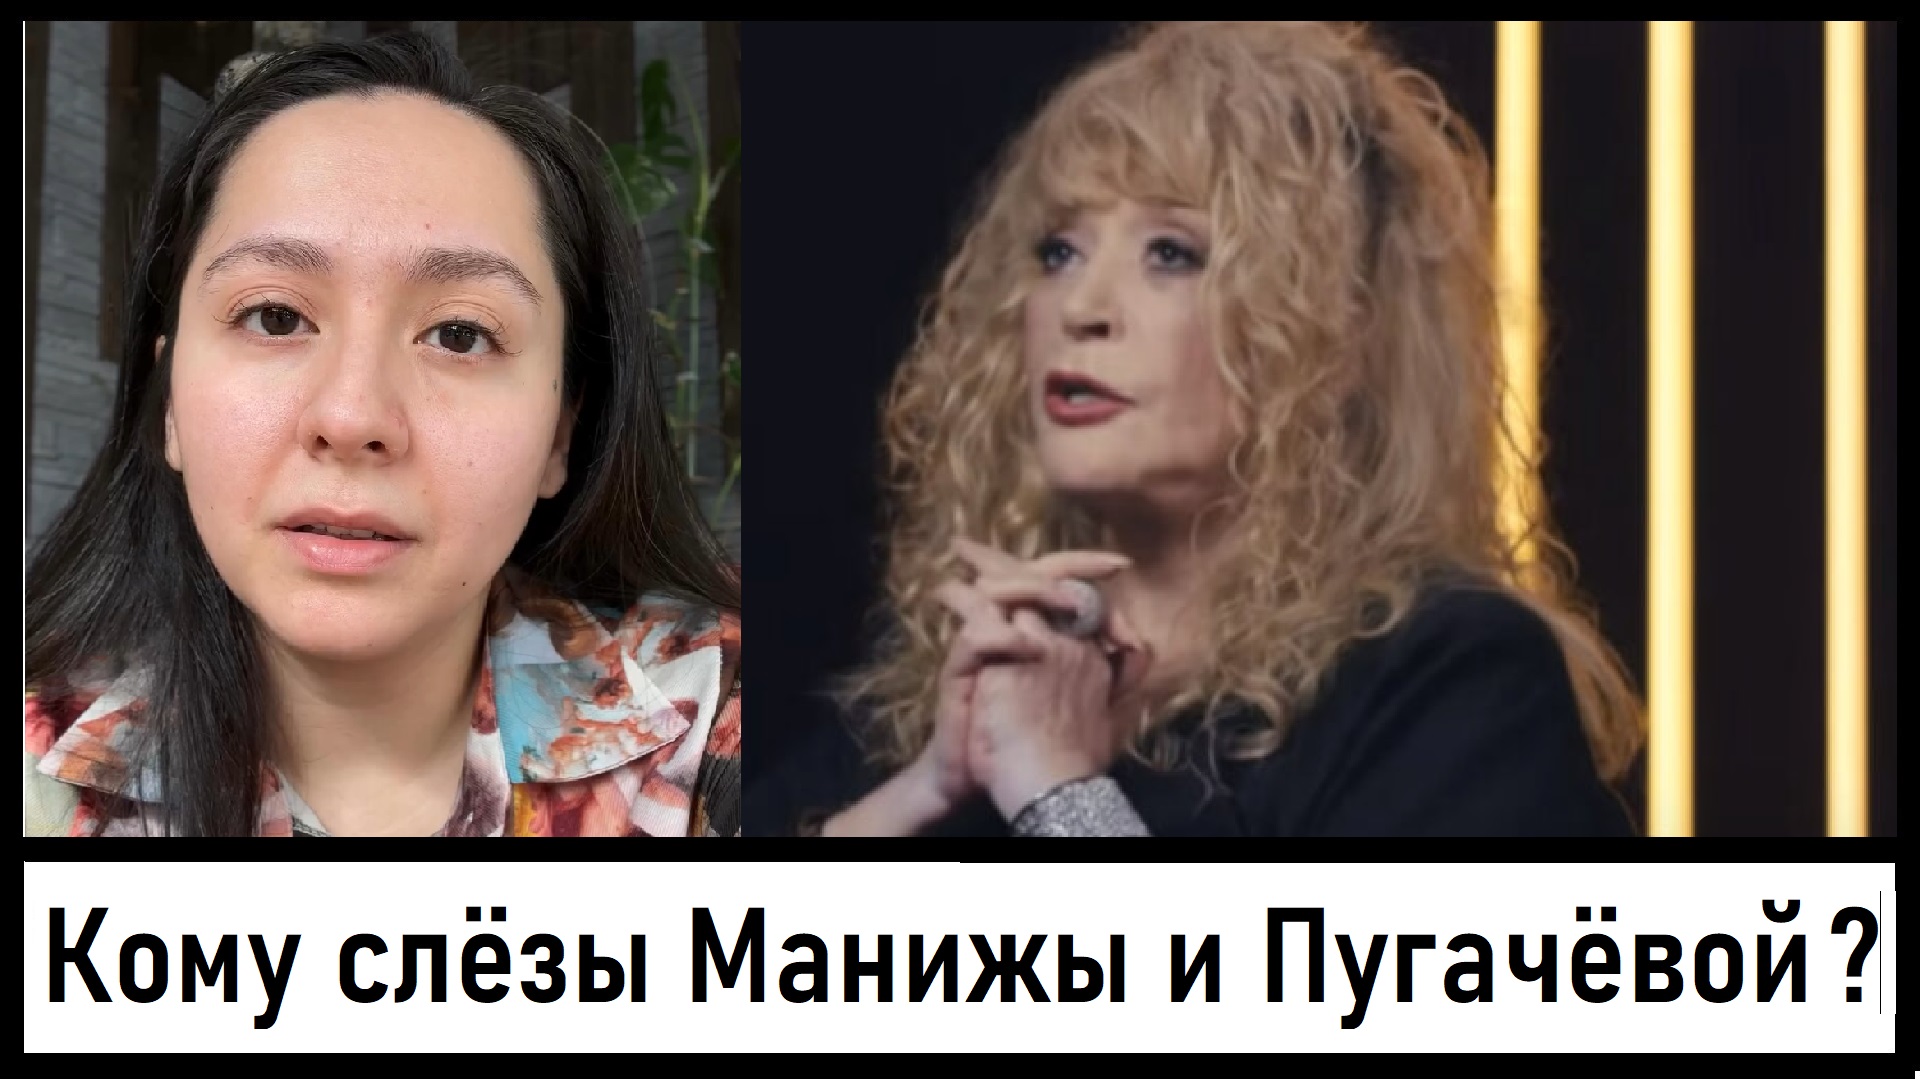 Кому лила слёзы Манижа? Кому дала прощение Пугачёва?